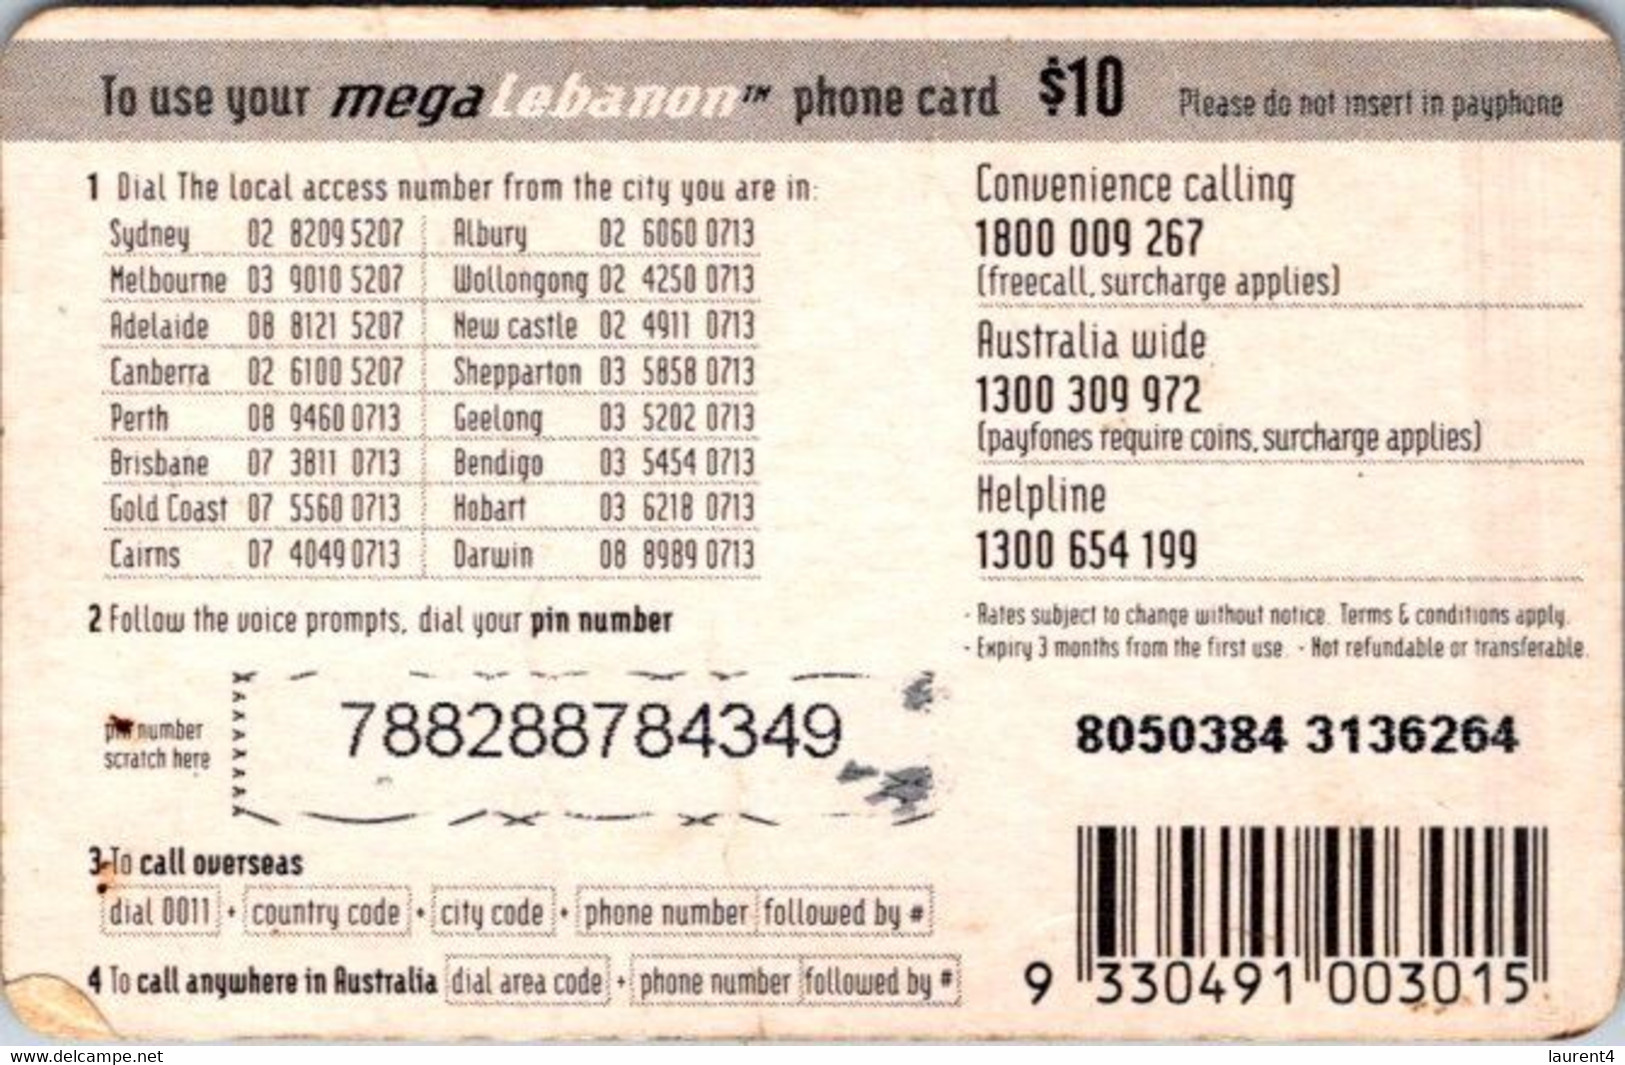 (3-10-2021 F) Phonecard -  Liban - (1 Phonecard) MegaLebanon $ 10.00 - Libano